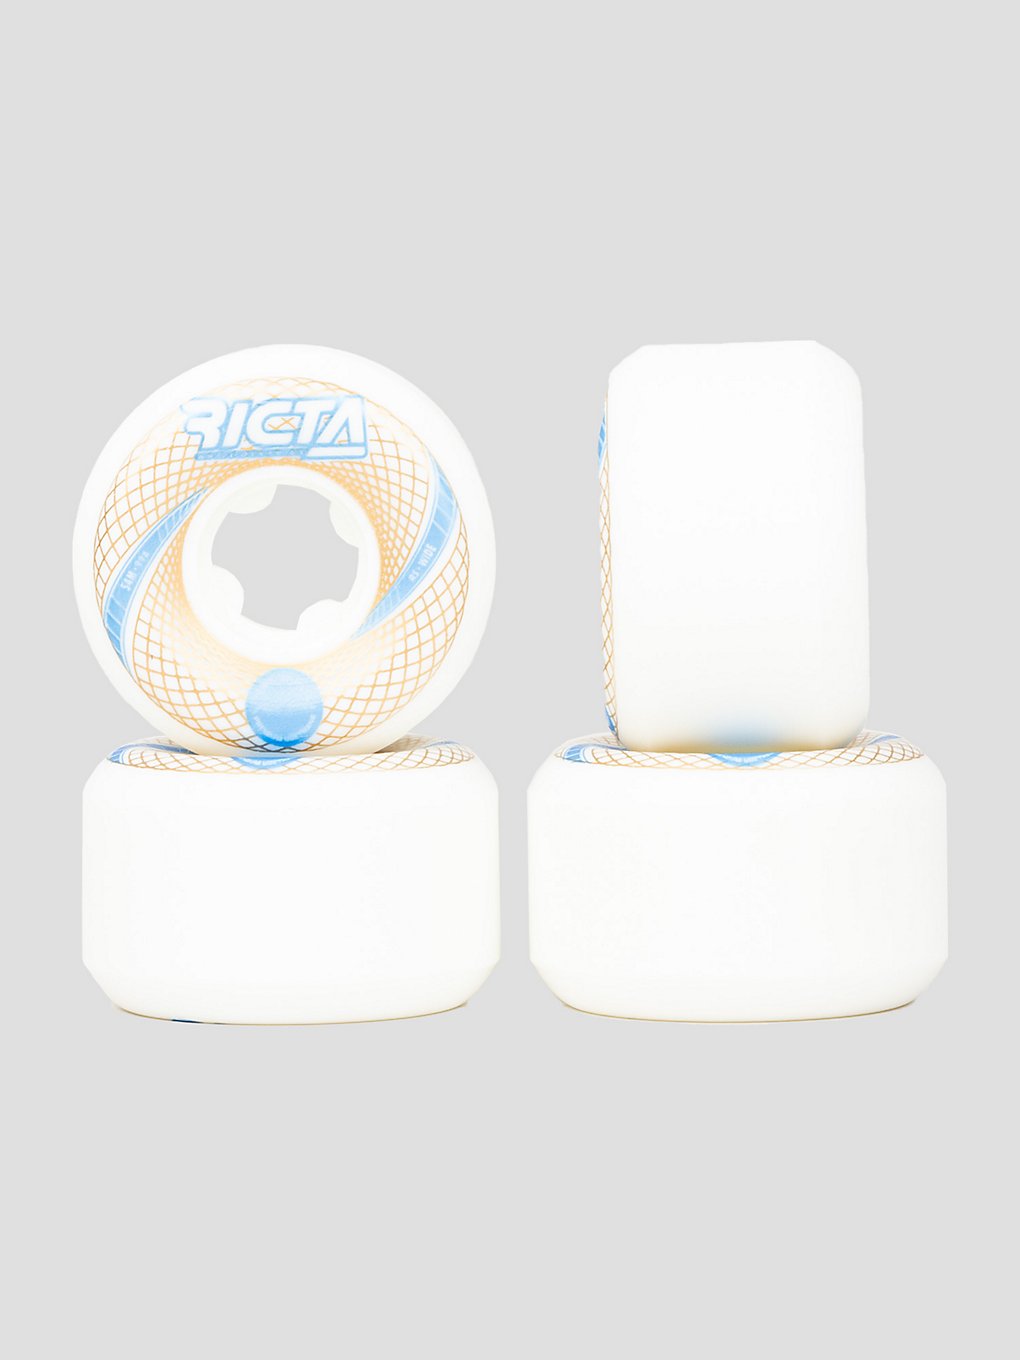 Ricta 54mm Nunes Vortex Naturals Wide 99A 54mm Rollen white kaufen